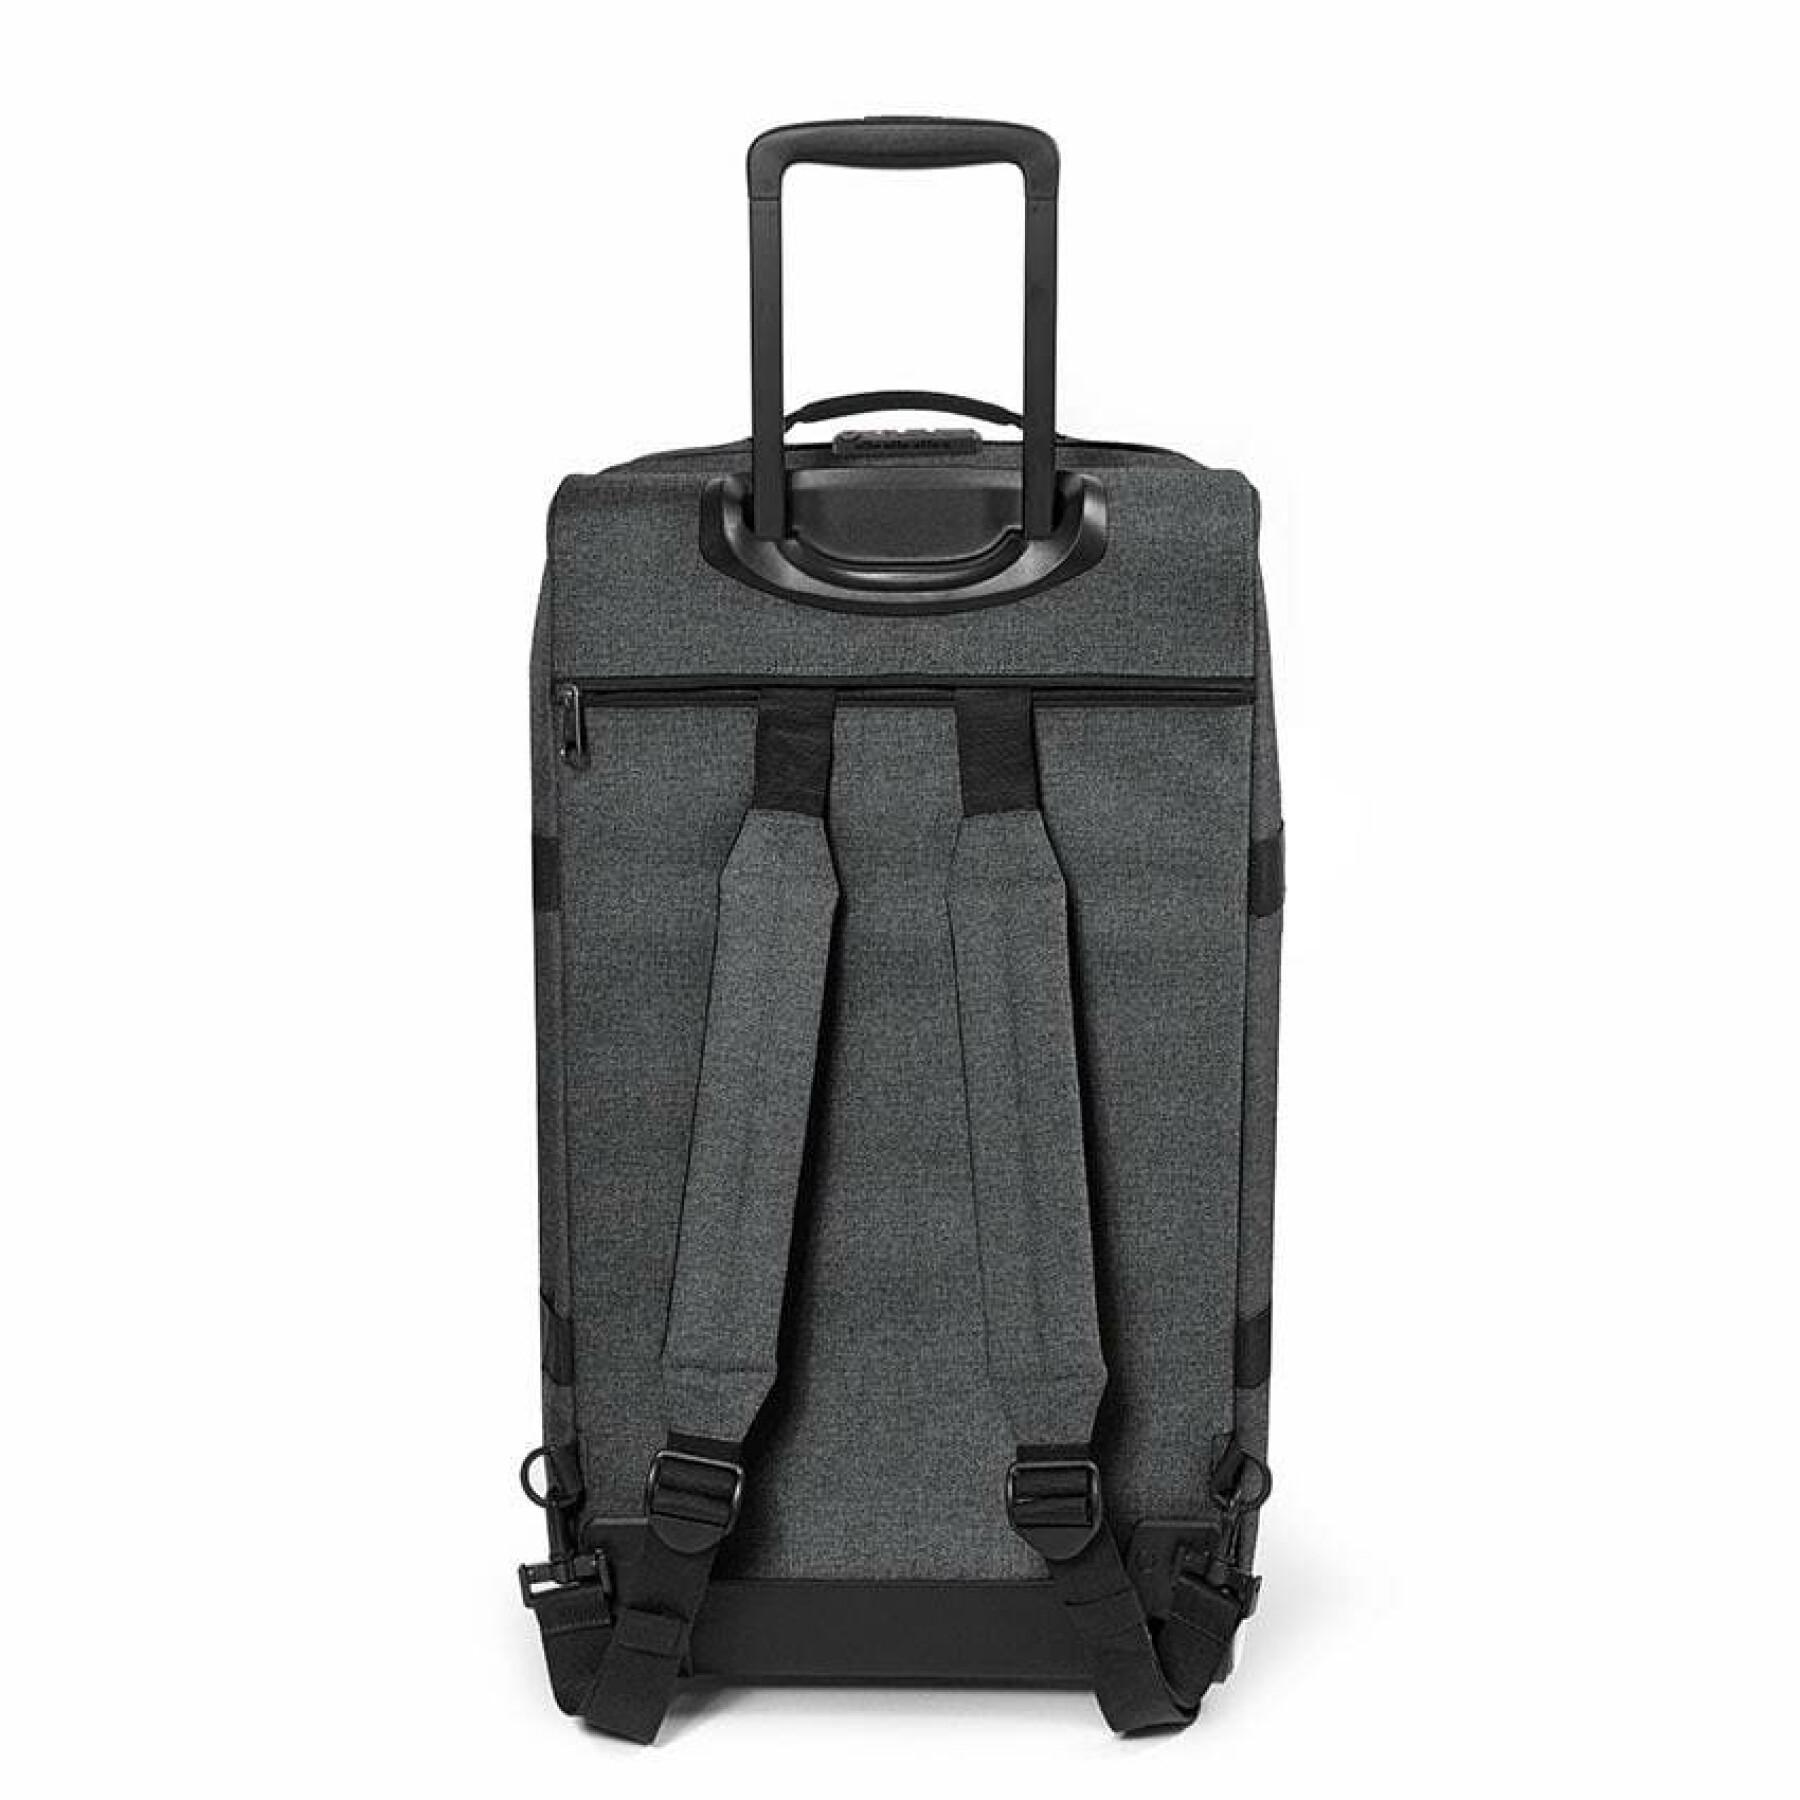 Travel bag Eastpak Strapverz M